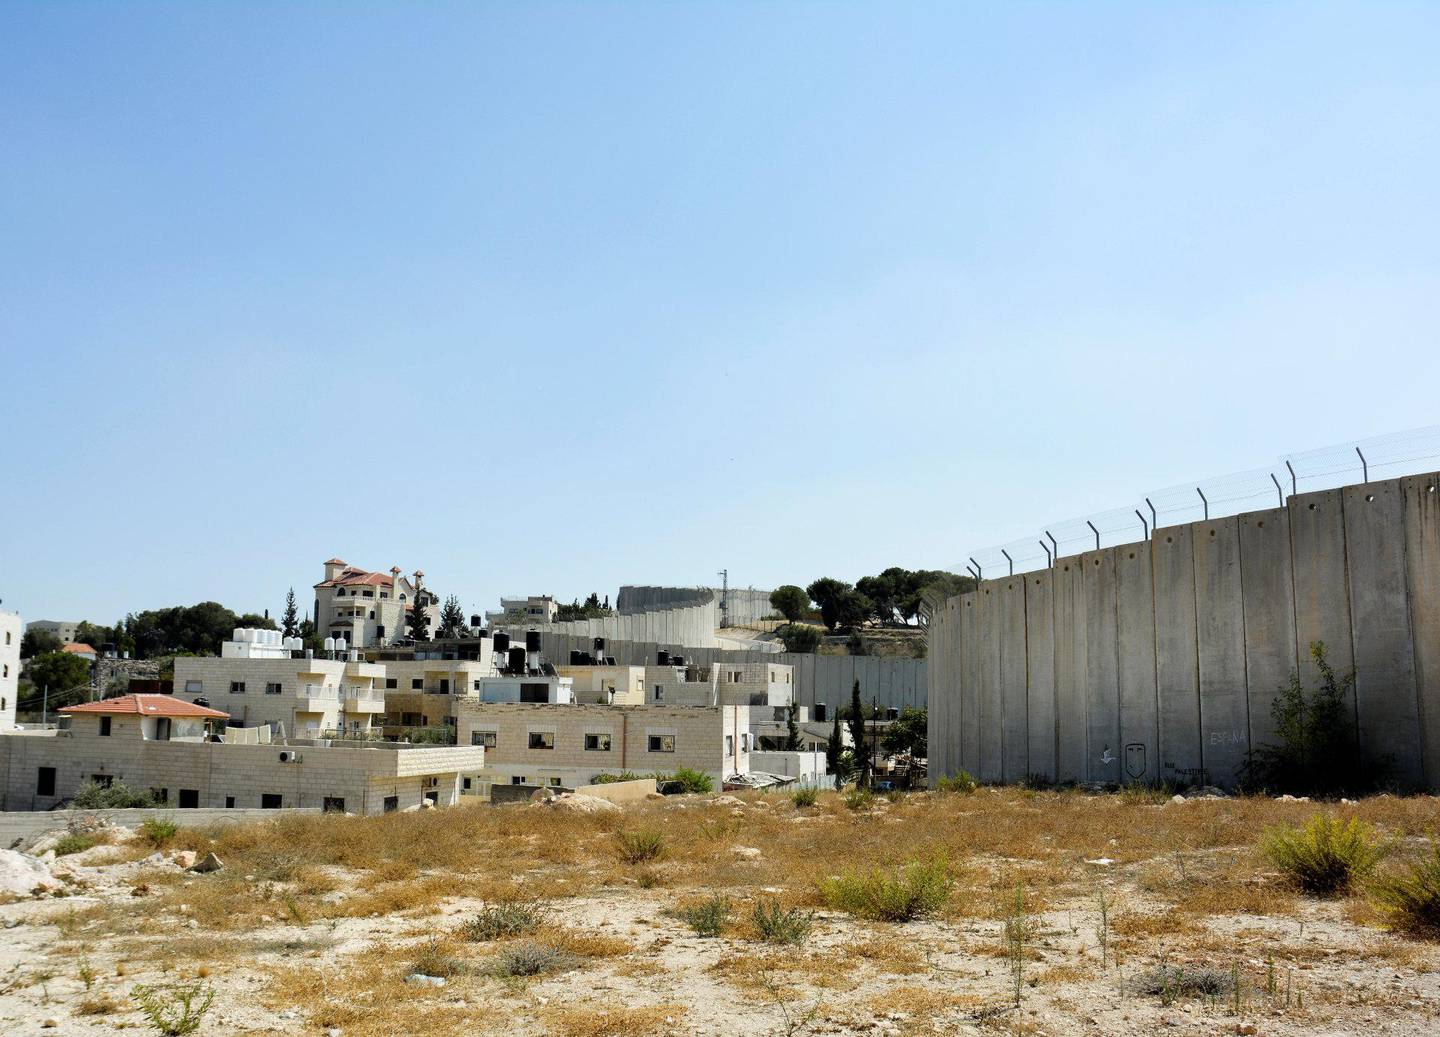 DELT PALESTINA: Palestina er delt opp i enklaver, atskilt av murer og gjerder. Her er muren som skiller Øst-Jerusalem fra Abu Dis.